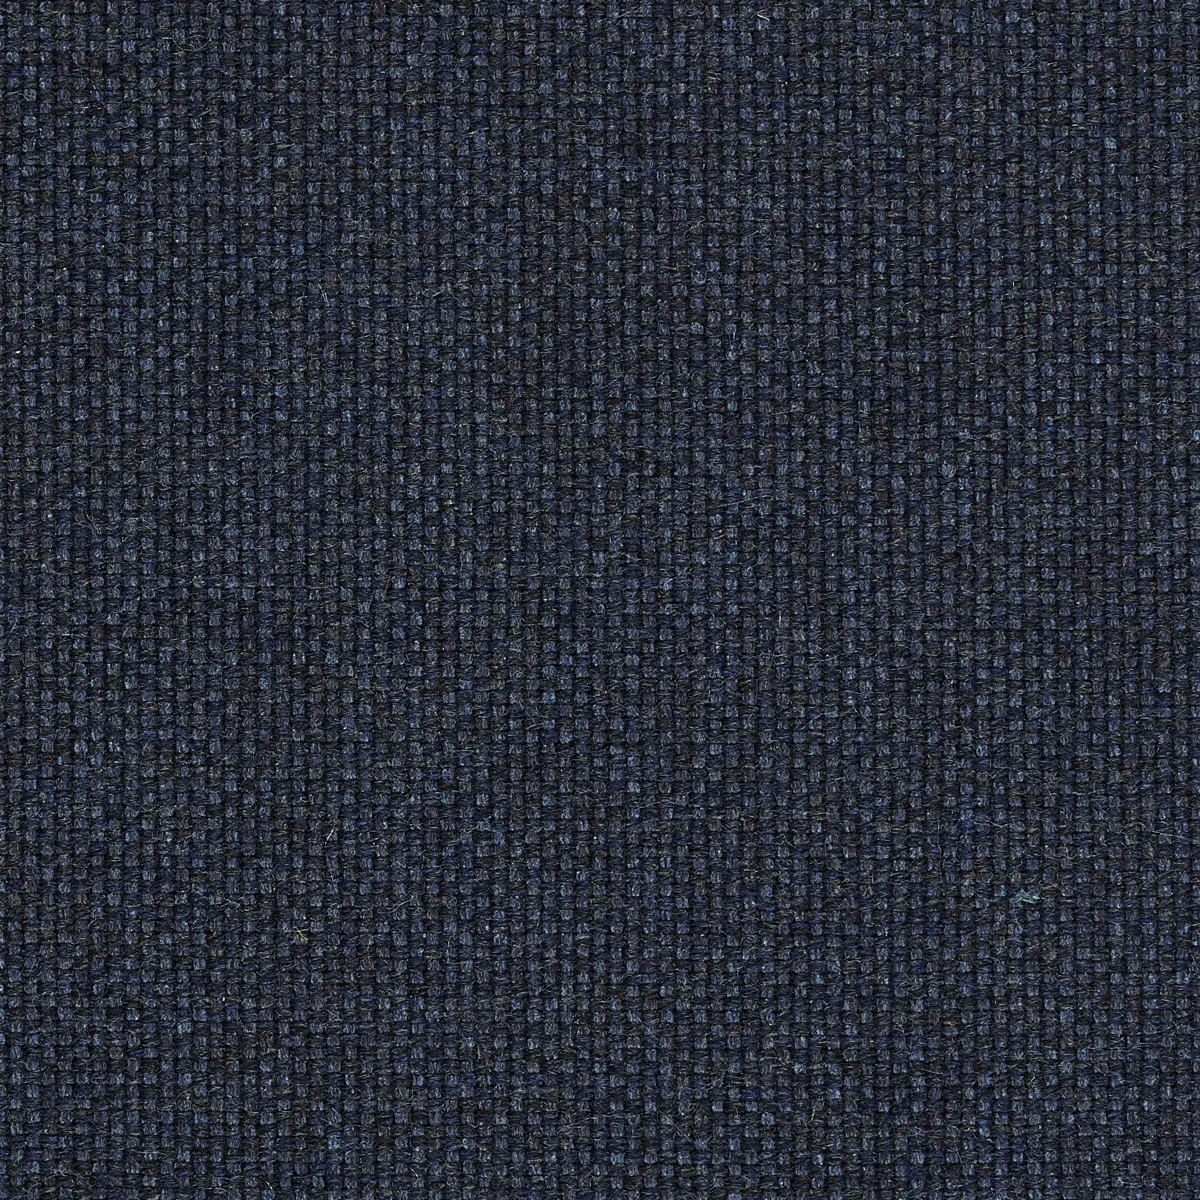 SOLPURI BOXX  Top-Modul Ecke - Lehnen Alu anthracite - Sitz- und Rckenpolster  / Dehli indigo-blue